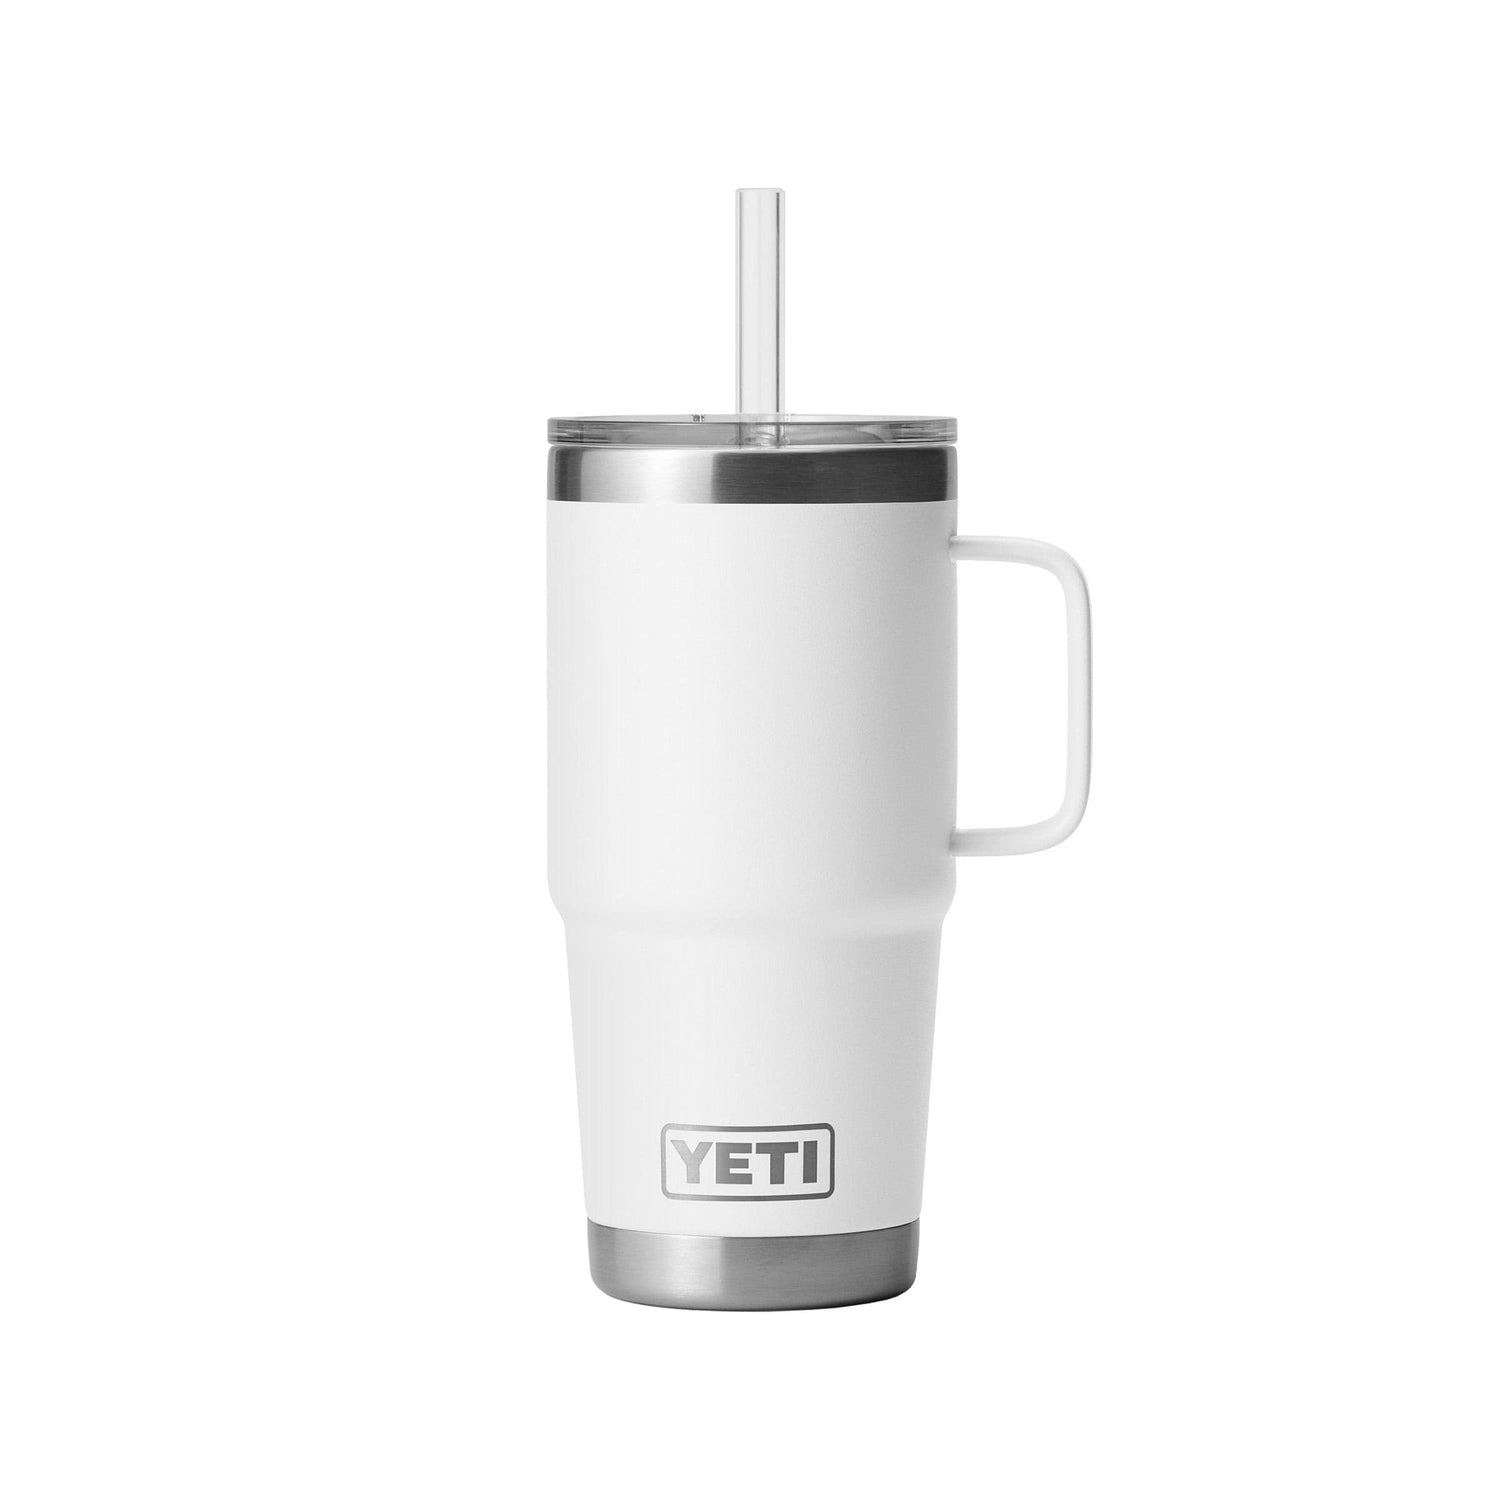 YETI Rambler 14 oz Black Mug With Clear Drink Through Lid - Coffee Tea Cup